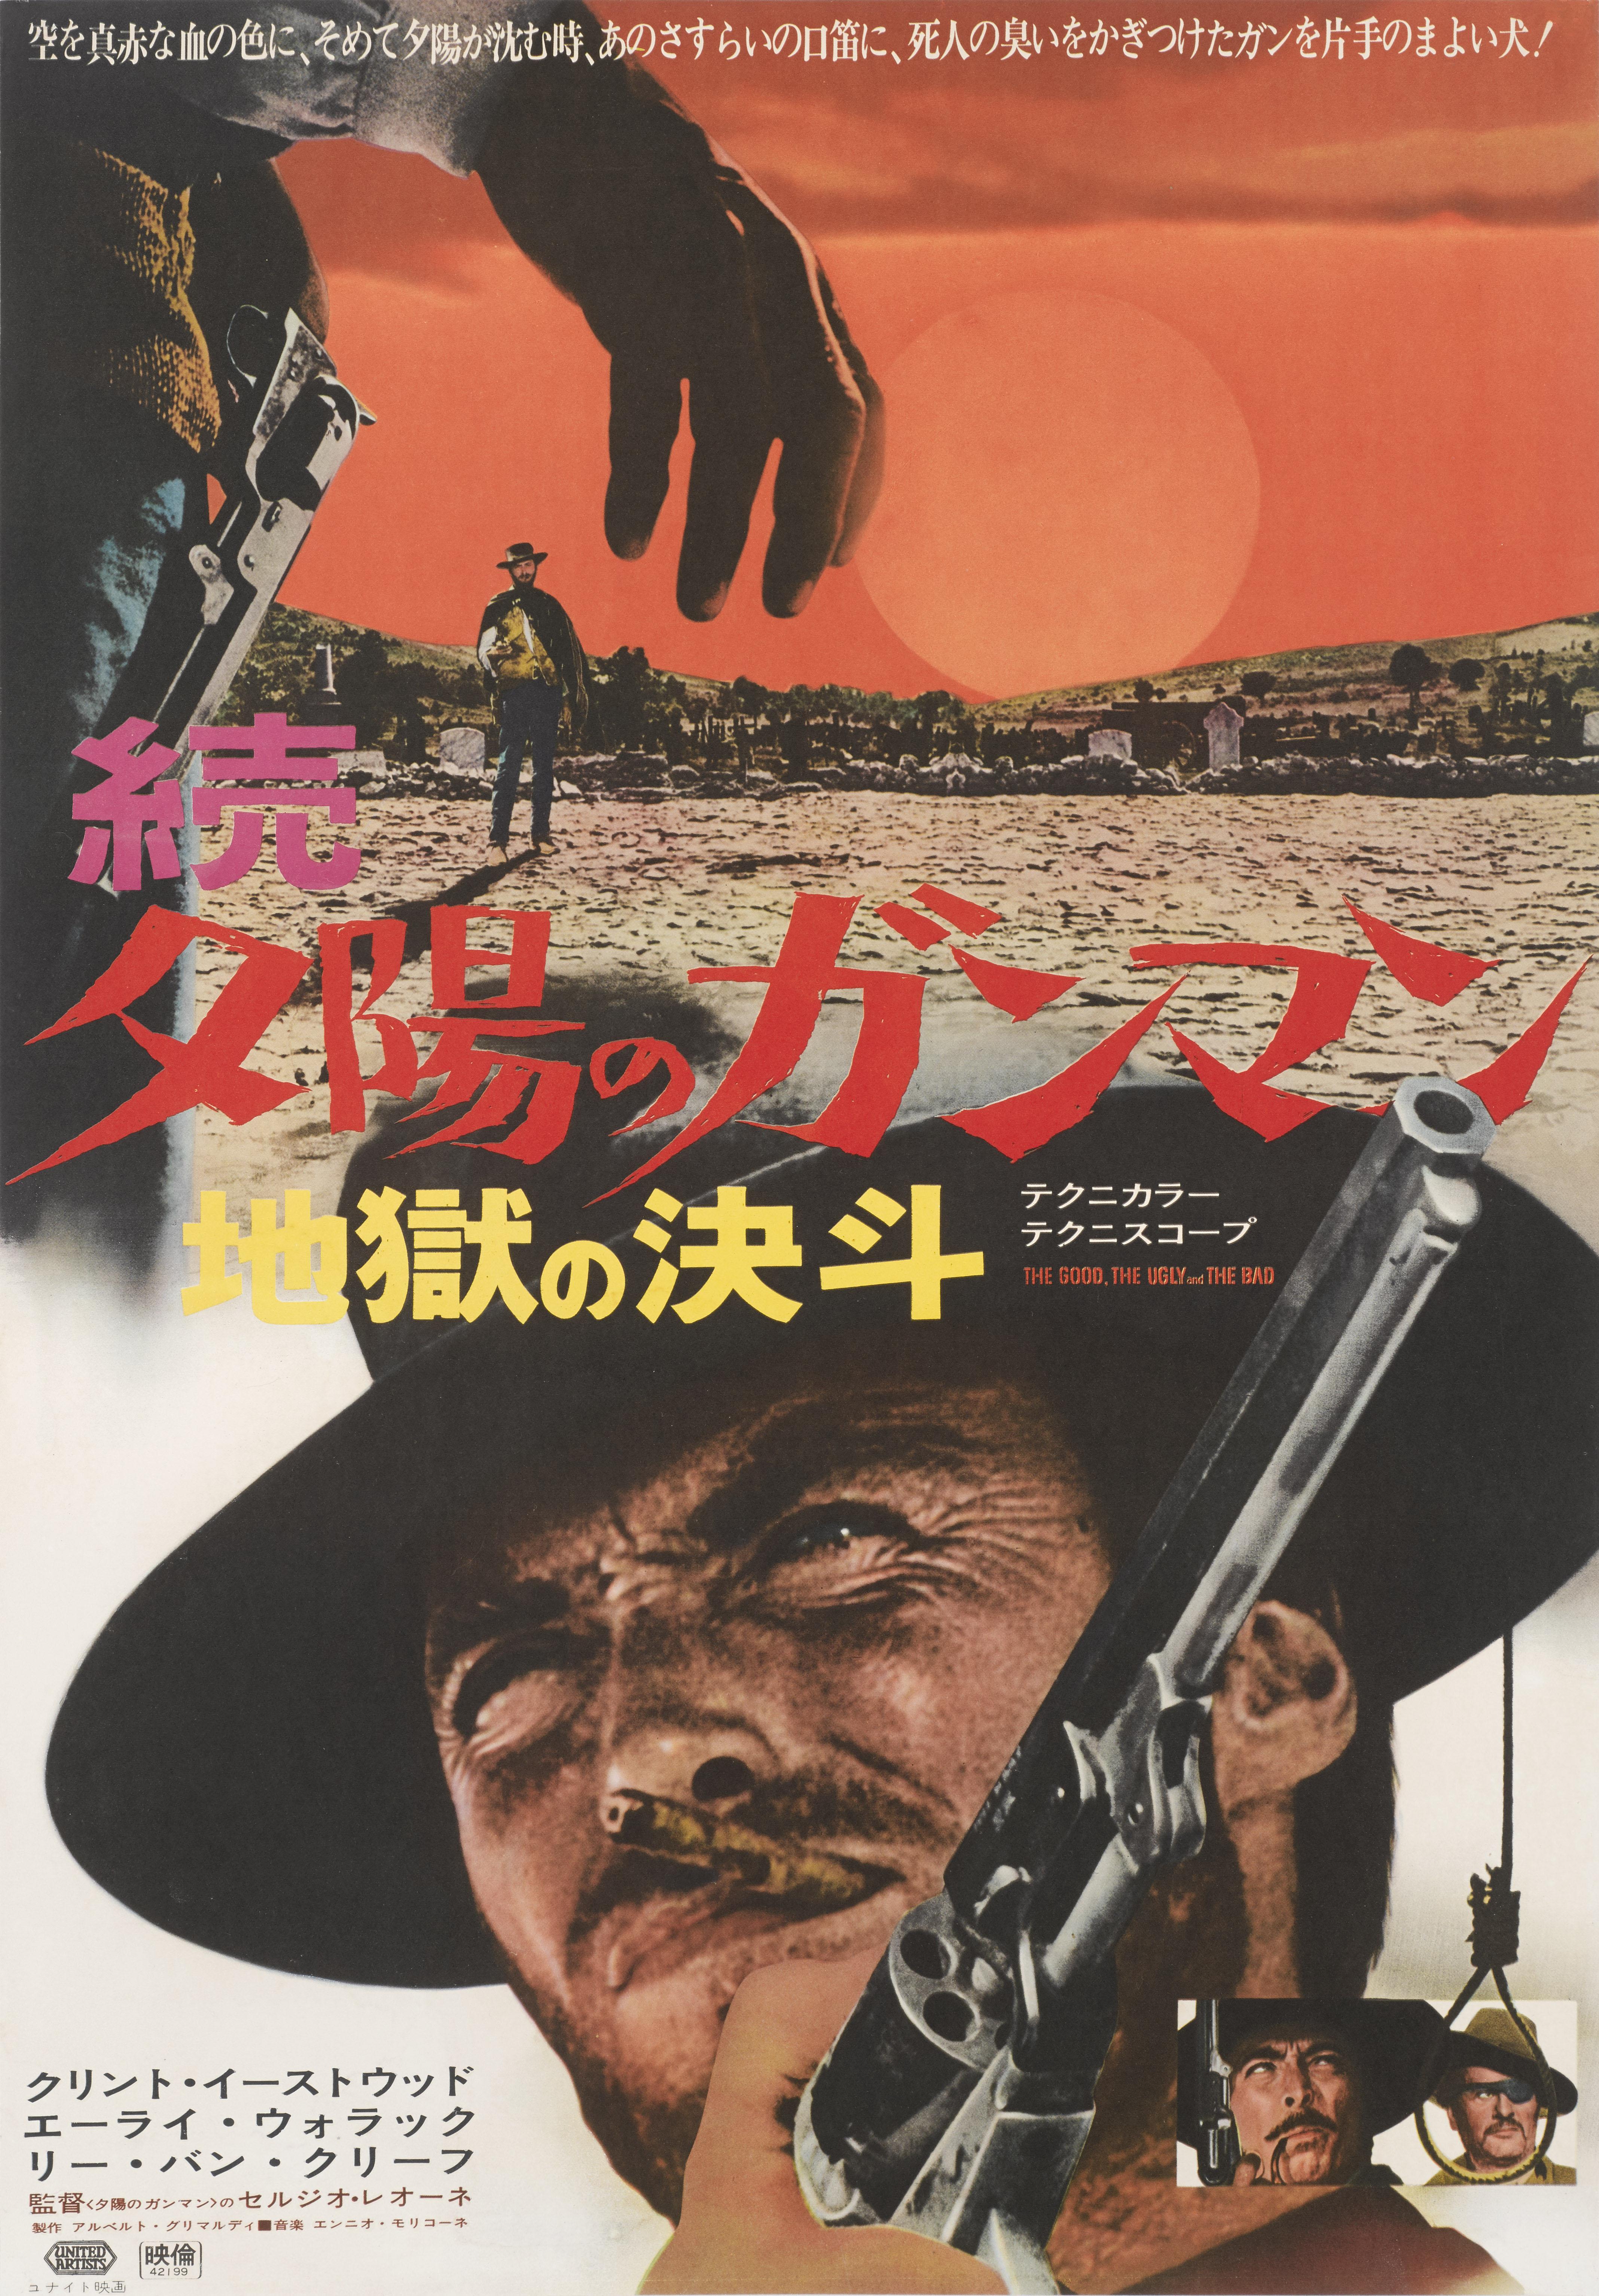 Affiche d'origine du film japonais Spaghetti de 1966 avec Clint Eastwood, Eli Wallach et Lee Van Cleef, et réalisée par Sergio Leone. Ce design cool a été créé pour la première sortie japonaise du film en 1969. Le bon, le brut et le truand reste